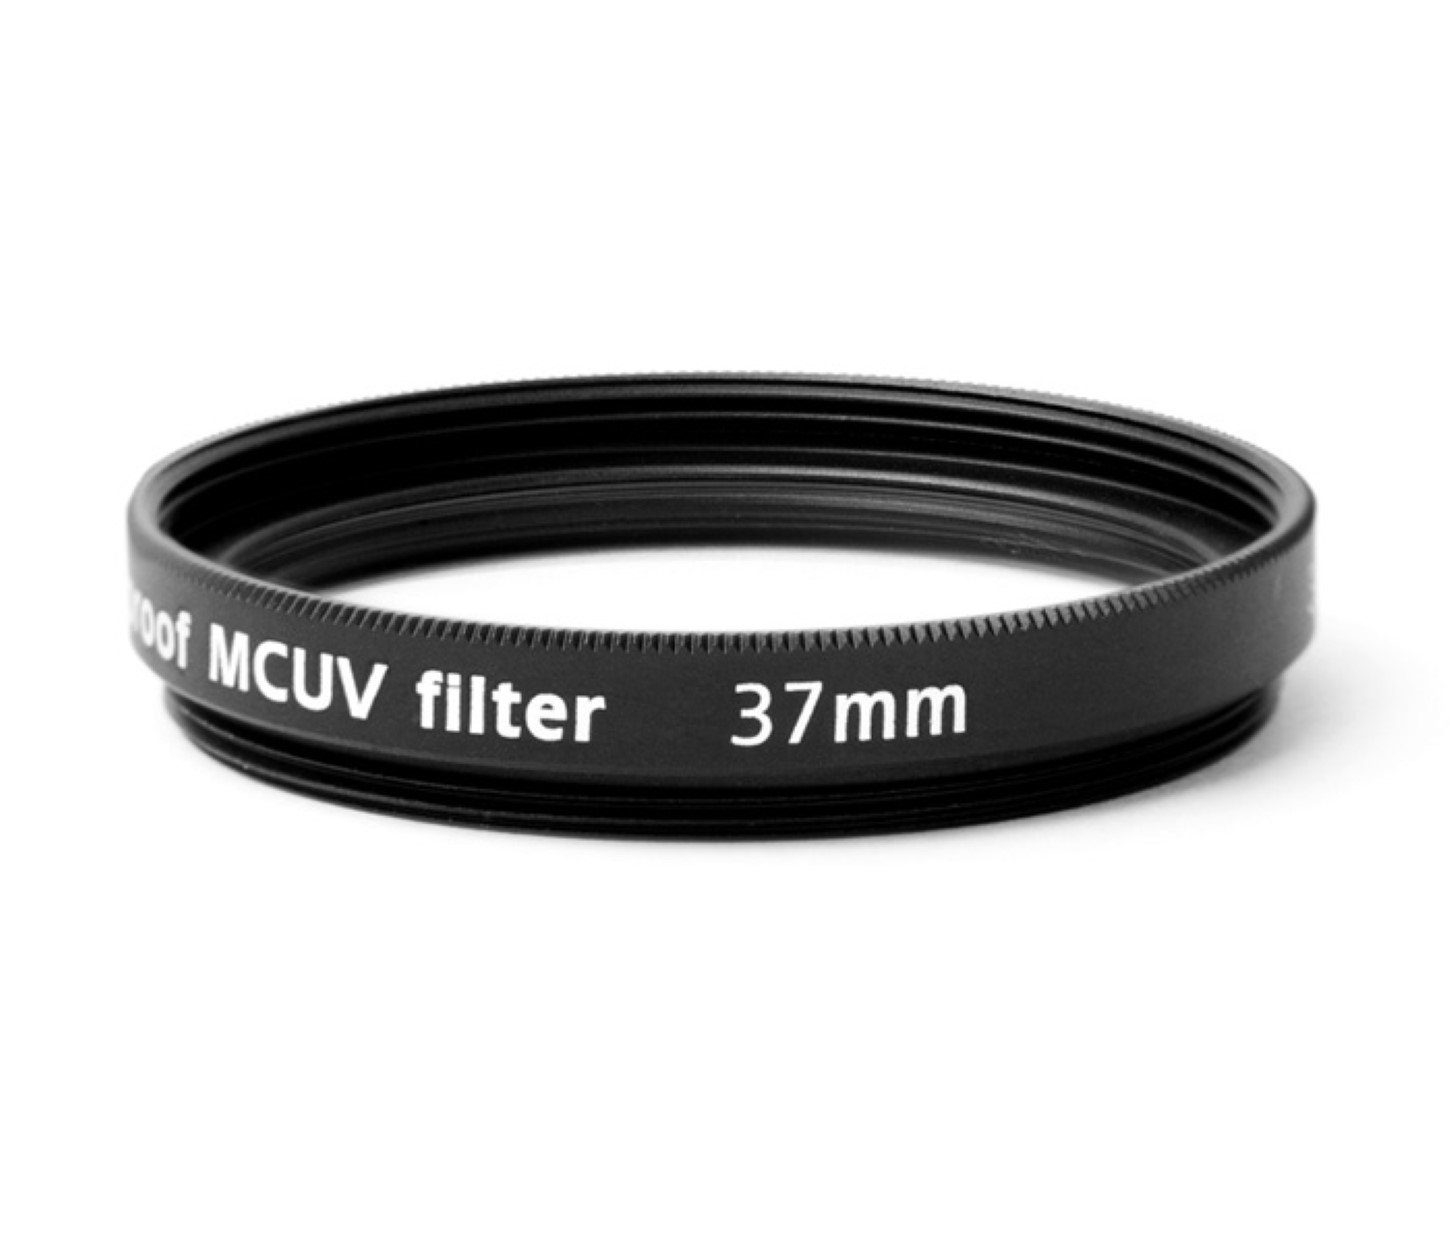 Pixel Multicoated UV Filter 37mm, vergütet wasserfest Foto-UV-Filter